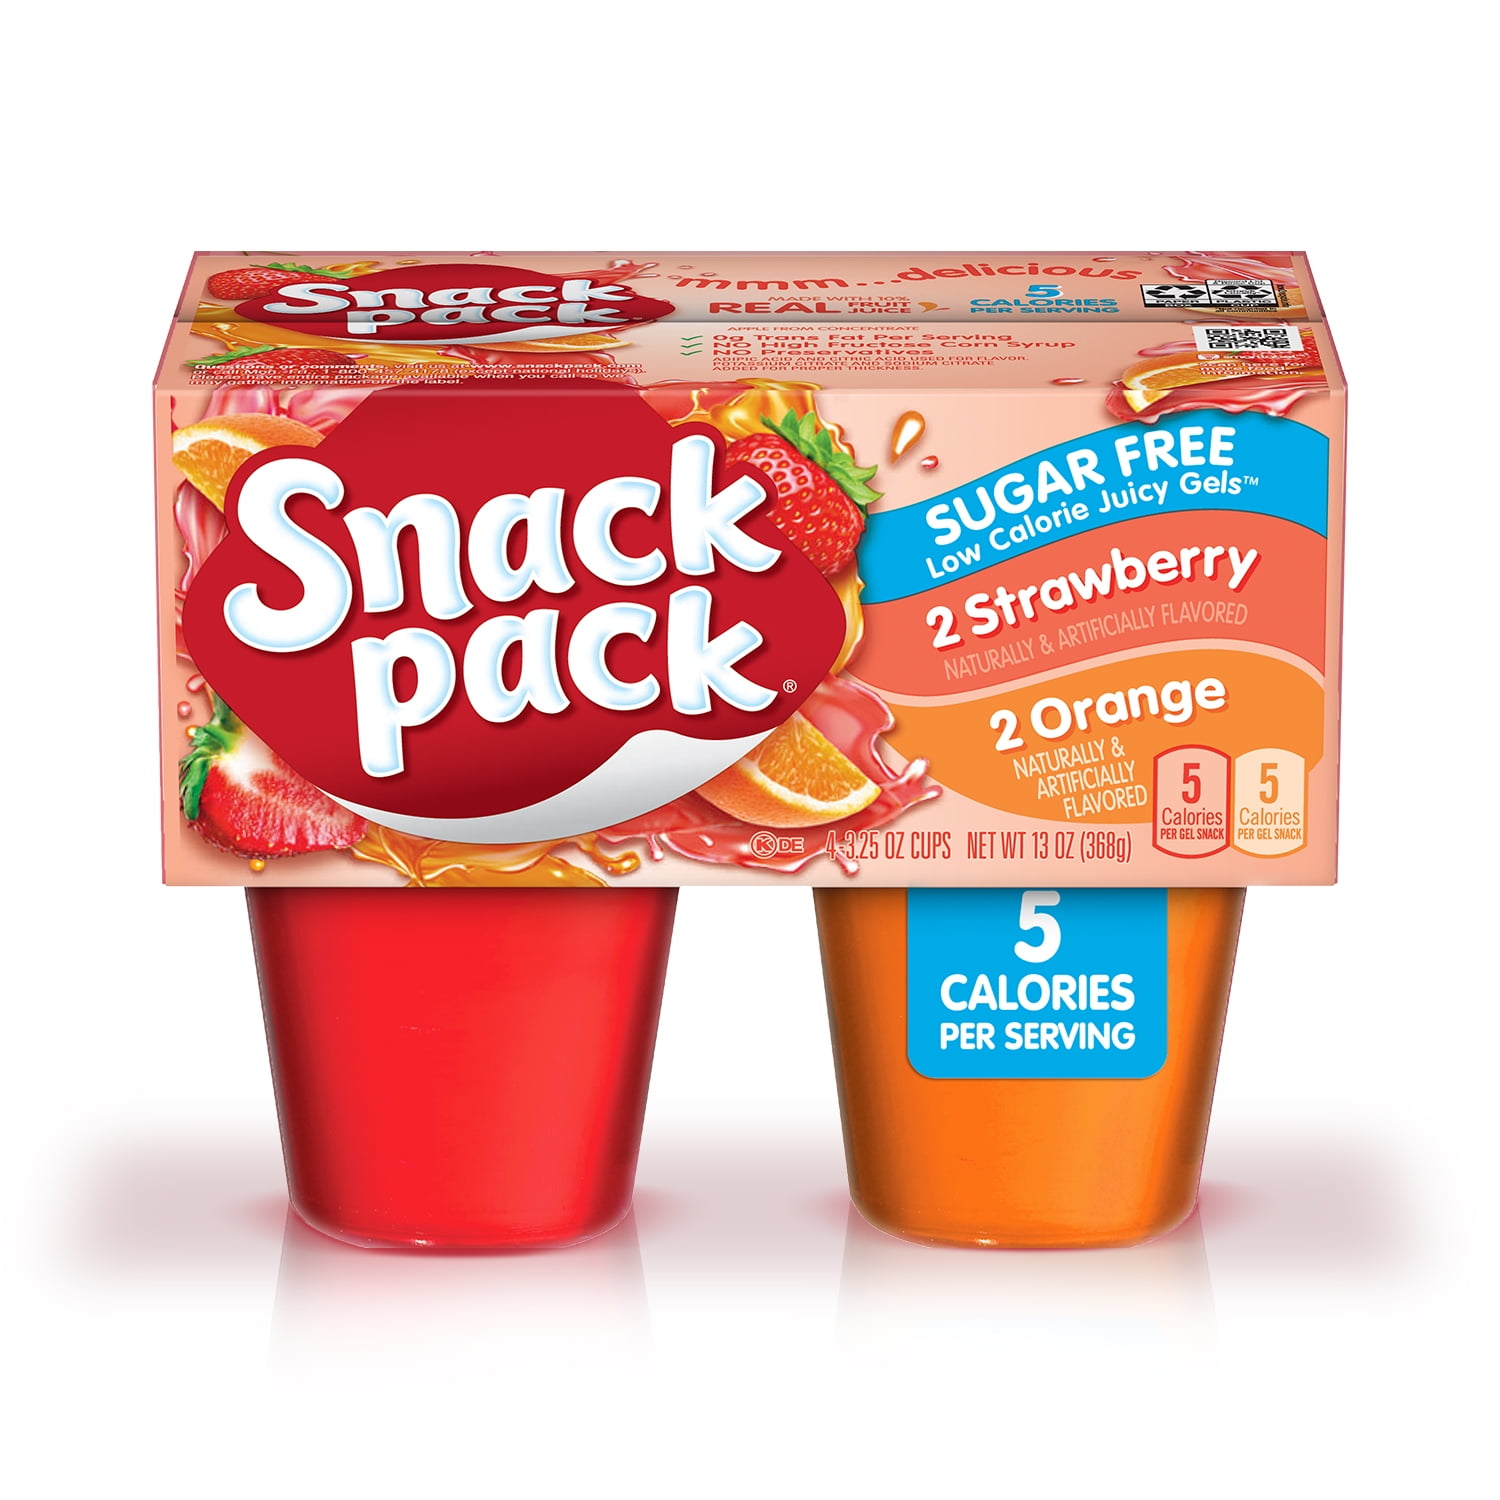 Snack Pack Sugar Free Strawberry & Orange Flavored Juicy Gels, 4 Count Snack Cups